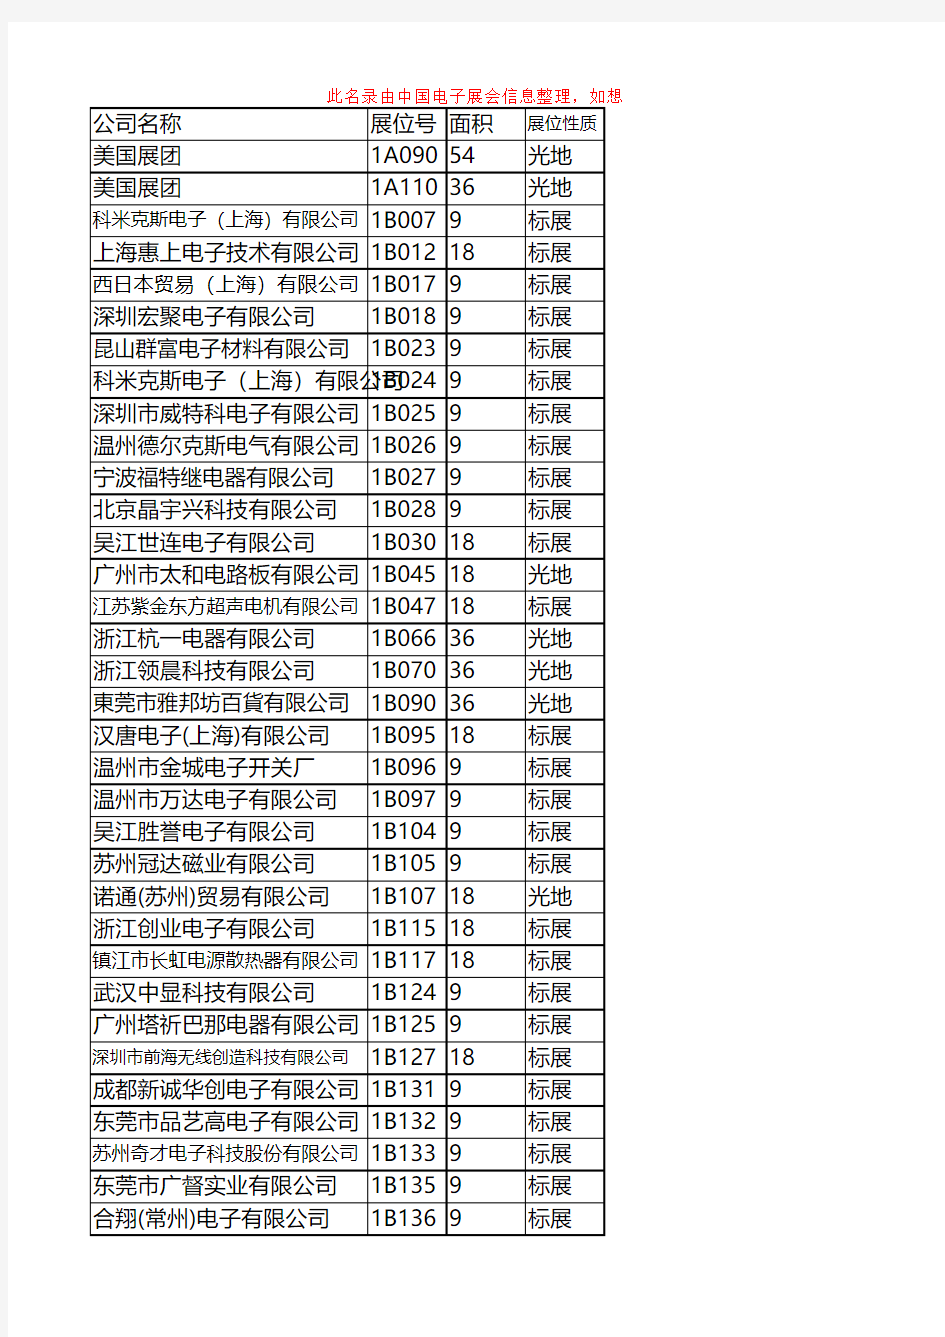 2015上海电子展_第86届中国电子展参展企业名录